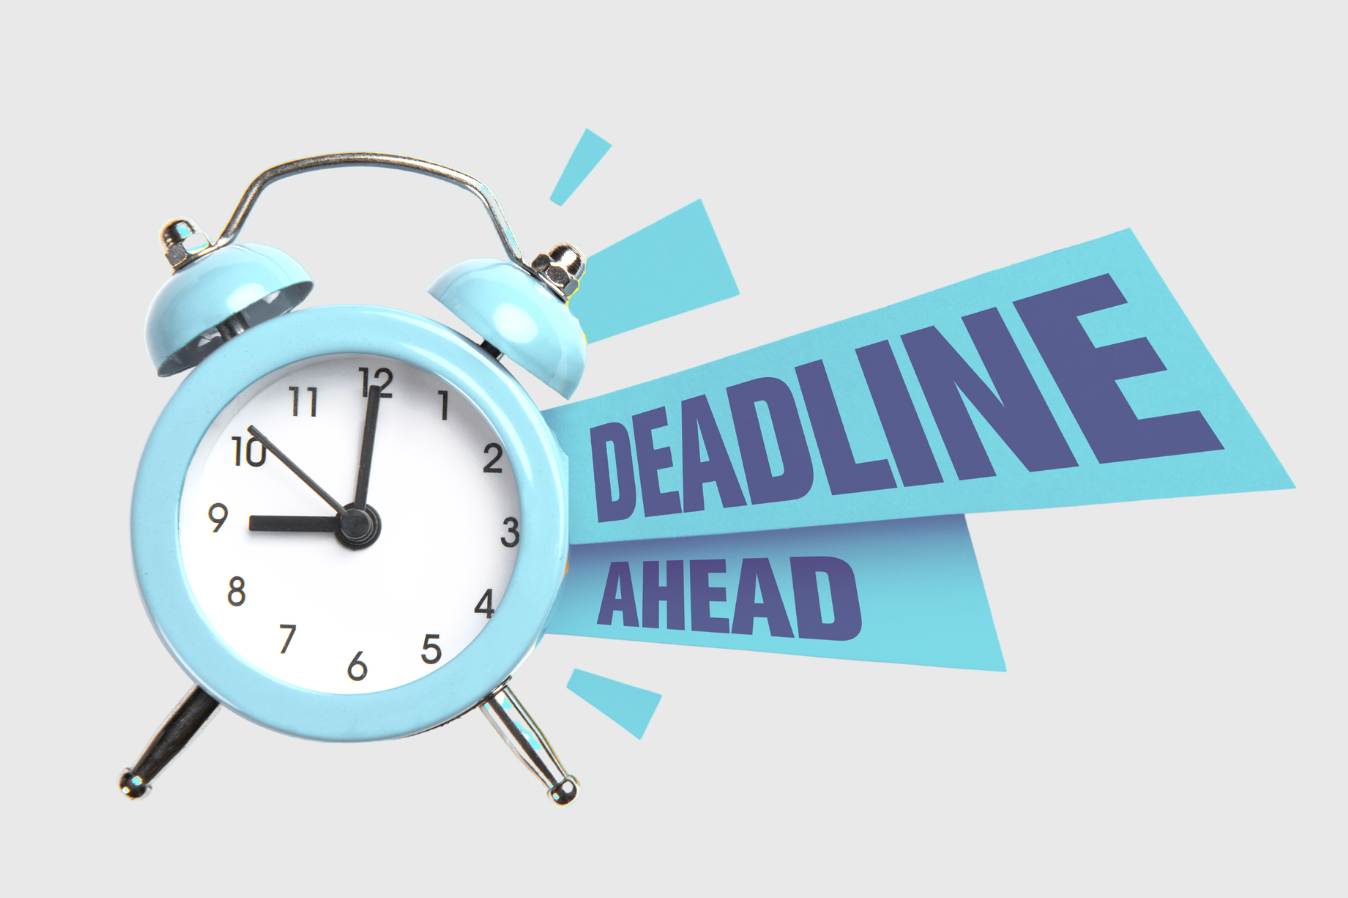 phd application deadline uk